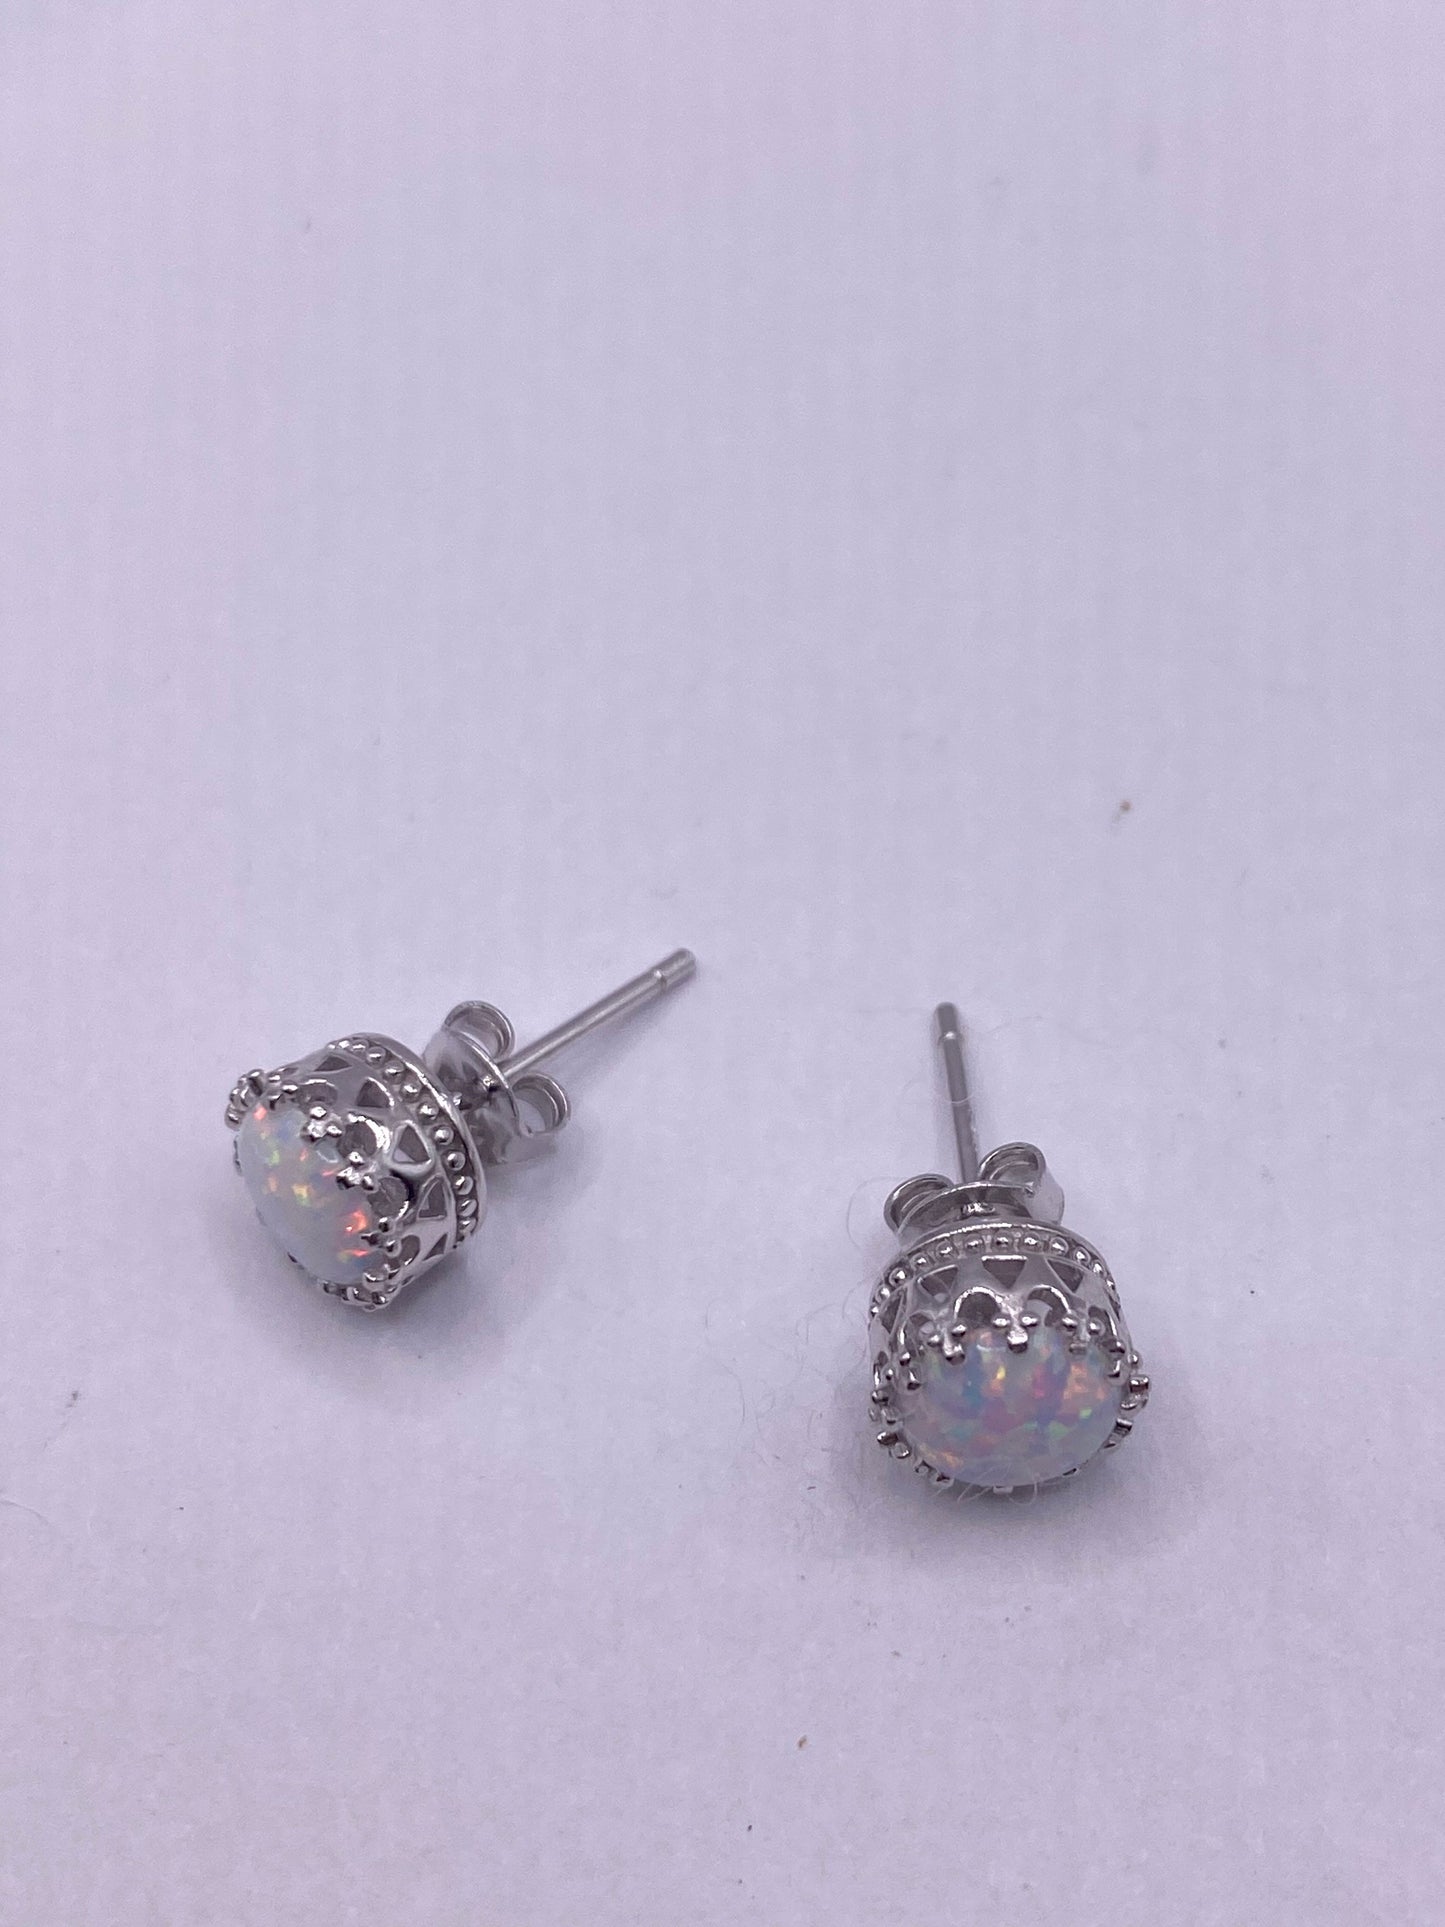 Vintage Blue Opal Earrings 925 Sterling Silver Studs